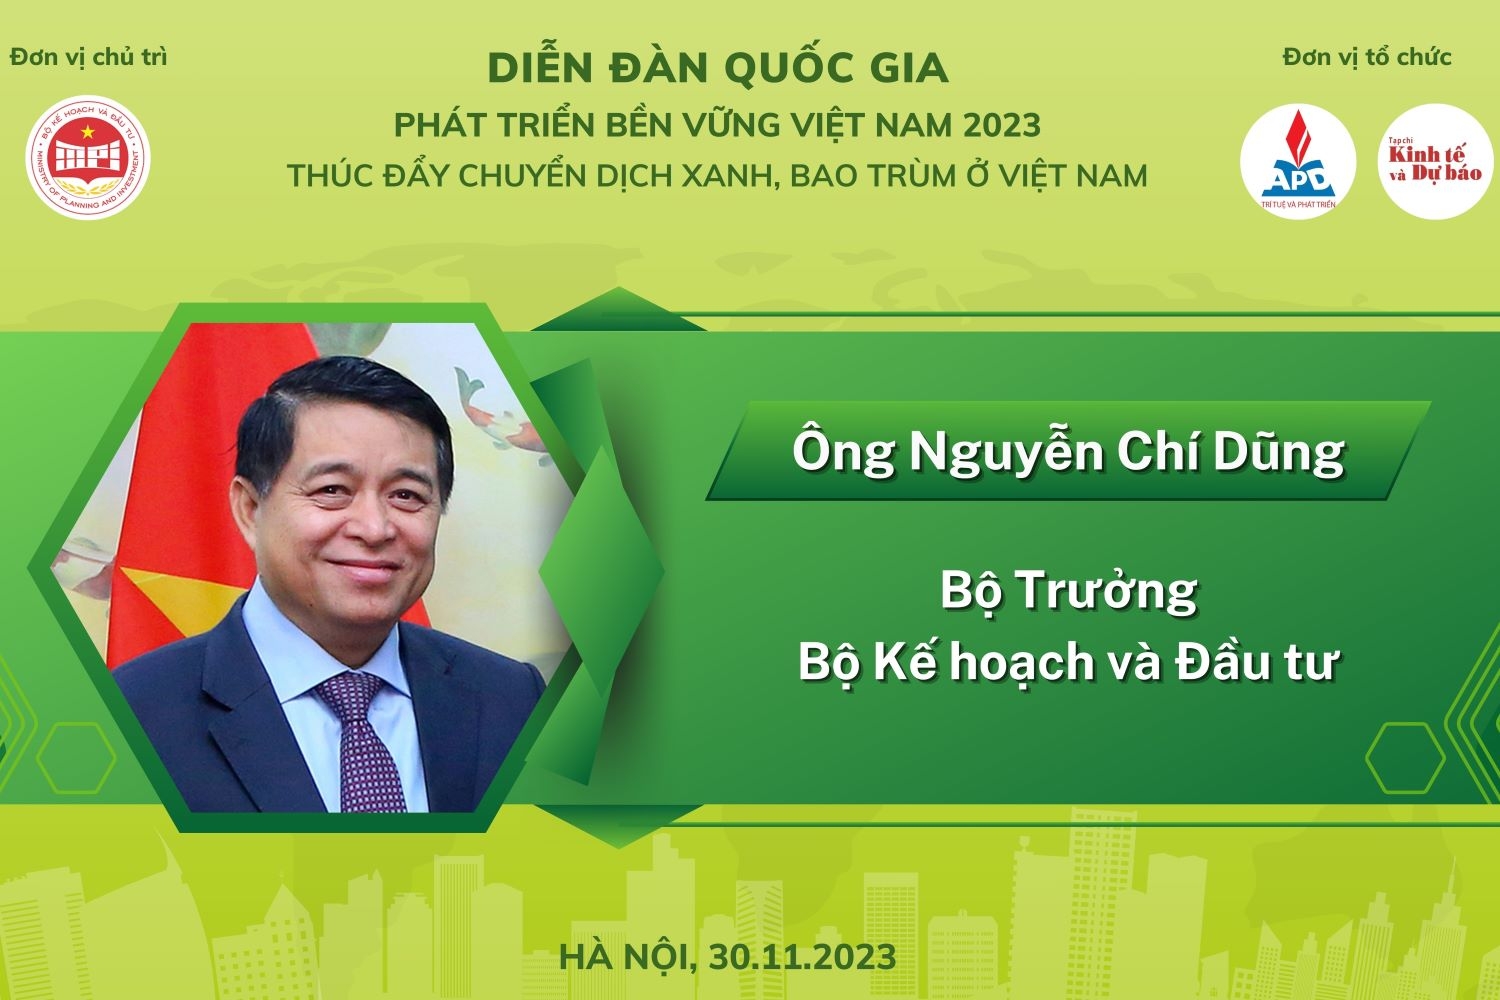 Diễn đàn quốc gia về Phát triển bền vững Việt Nam 2023: “Thúc đẩy chuyển dịch xanh, bao trùm ở Việt Nam”.